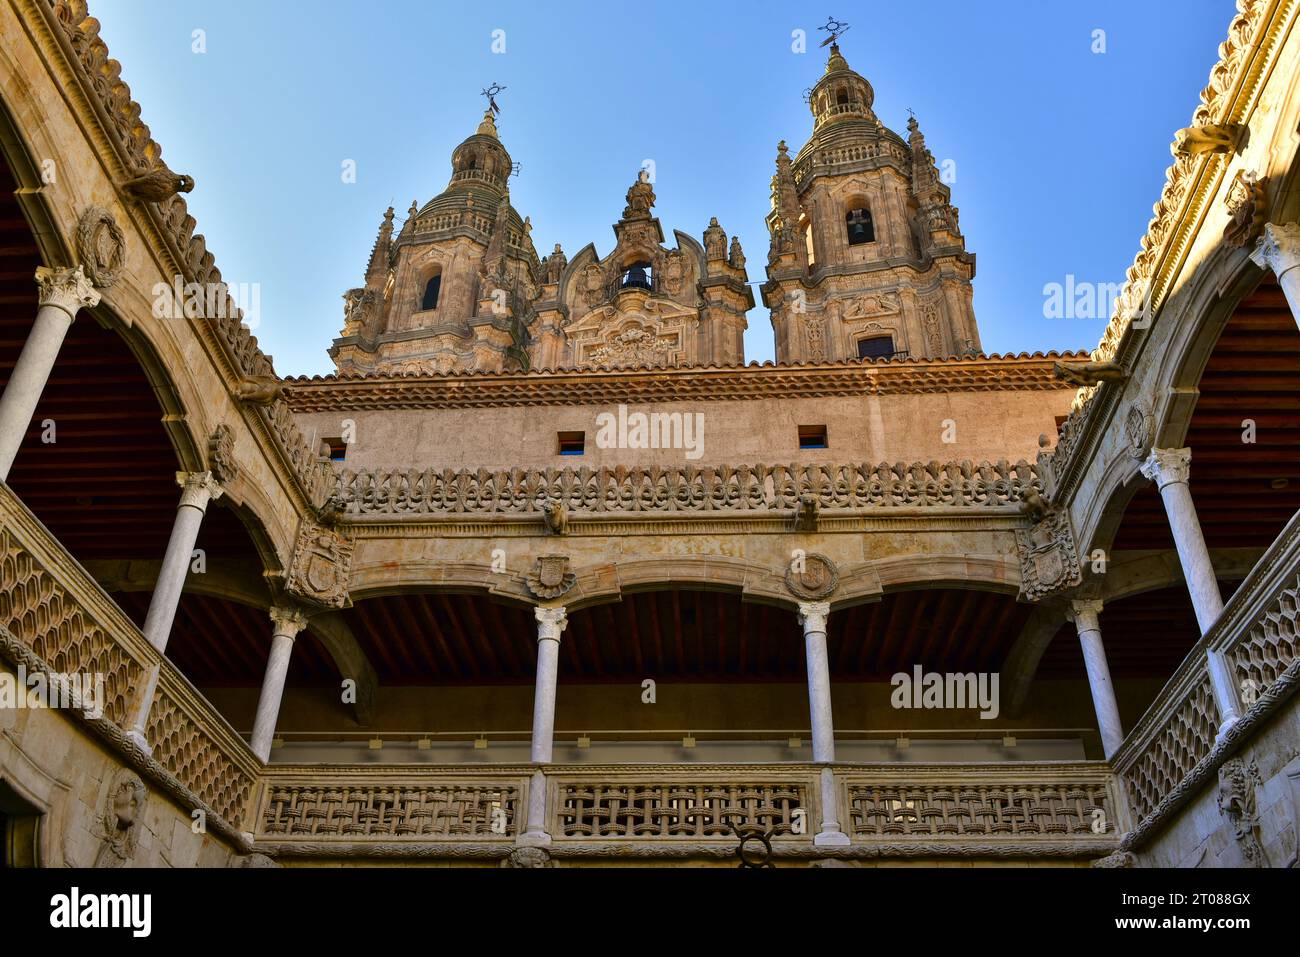 Der Innenhof des Shell House aus dem 15. Jahrhundert und die Türme von La Clerecía, einer barocken katholischen Kirche aus dem 18. Jahrhundert. Salamanca, Spanien, 18. Dezember Stockfoto